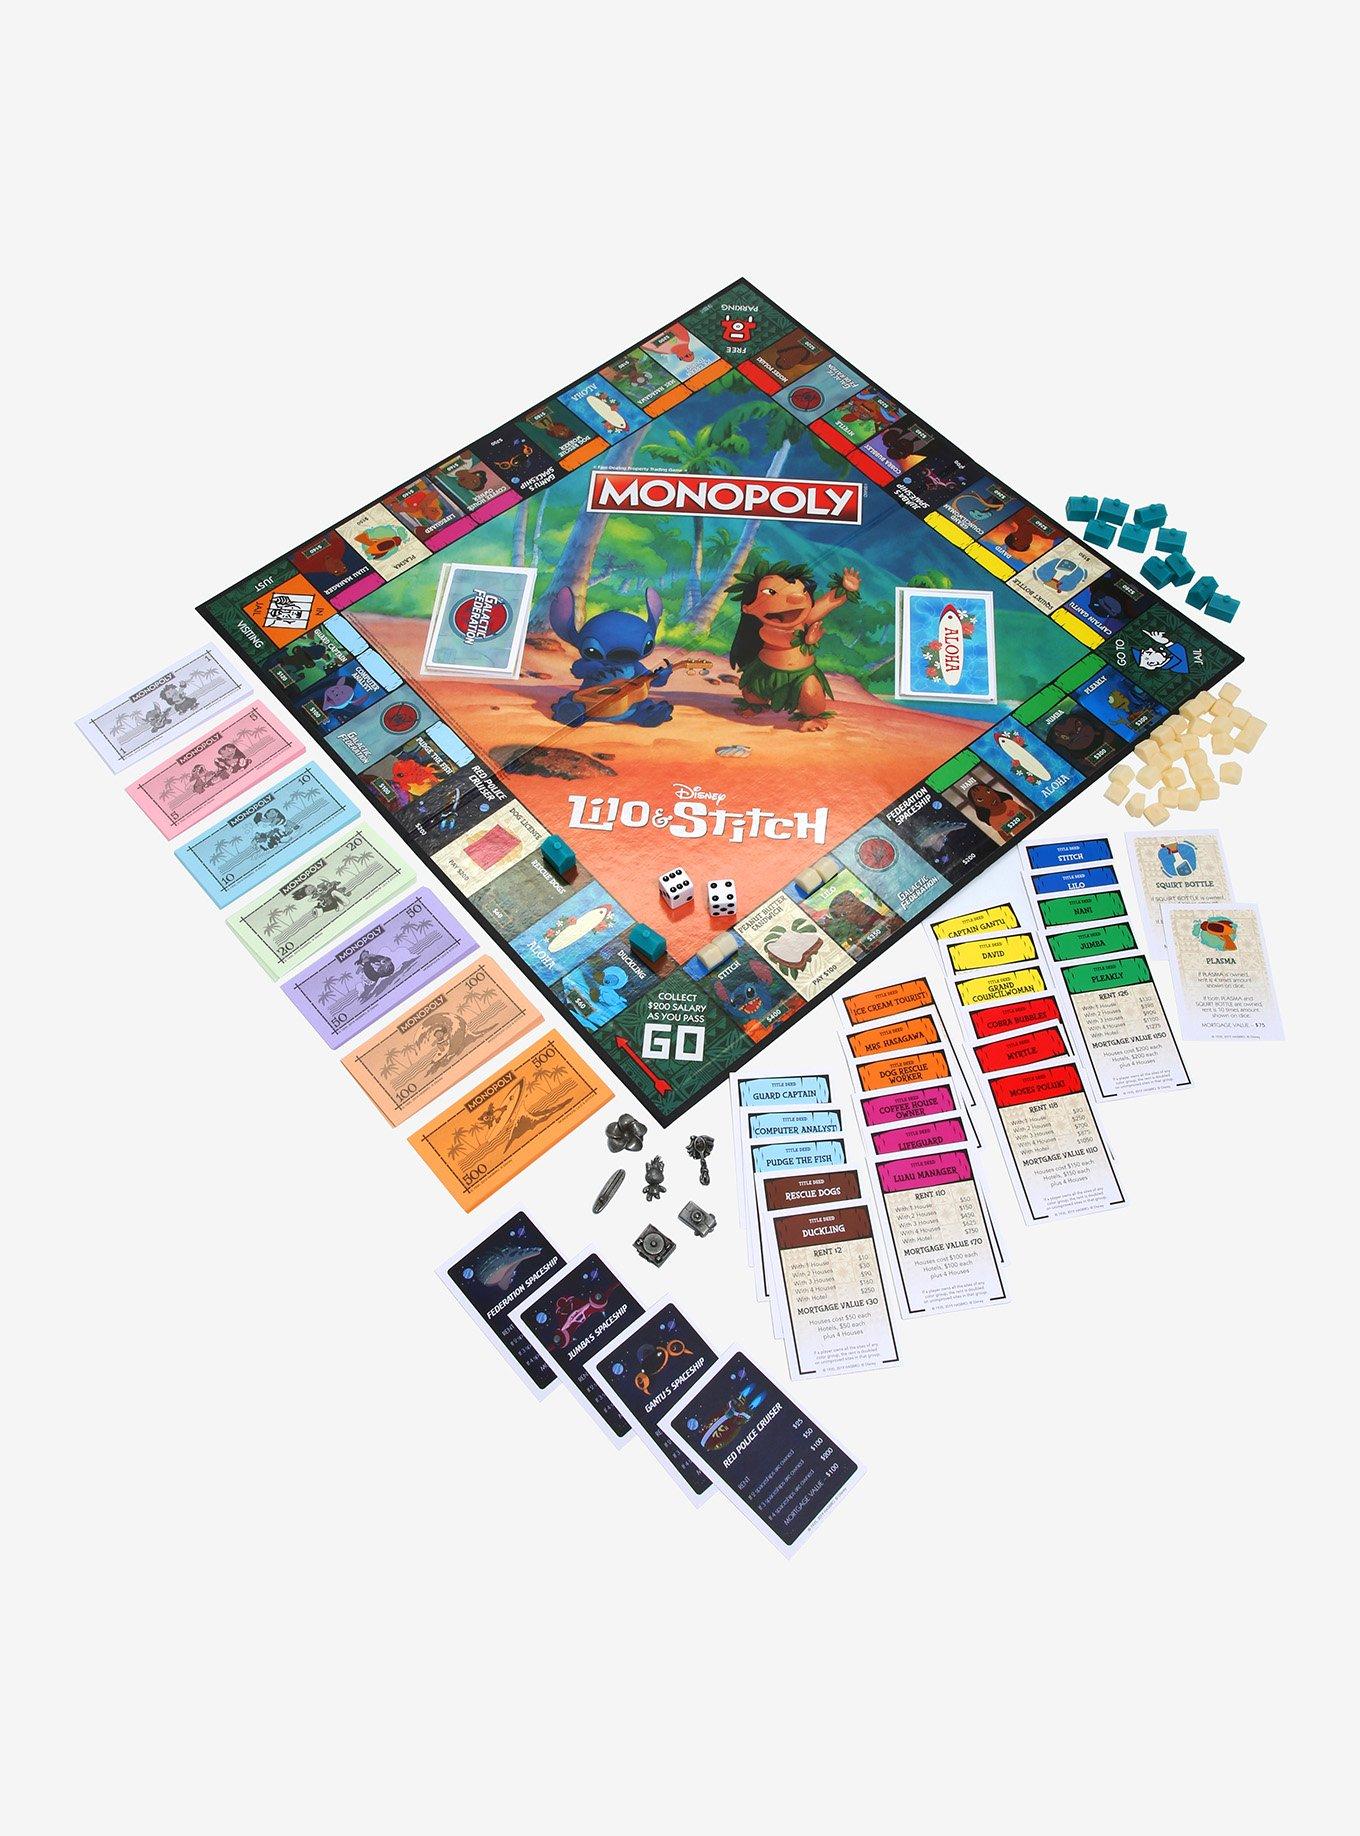 Disney Lilo & Stitch Edition Monopoly Board Game Hot Topic Exclusive